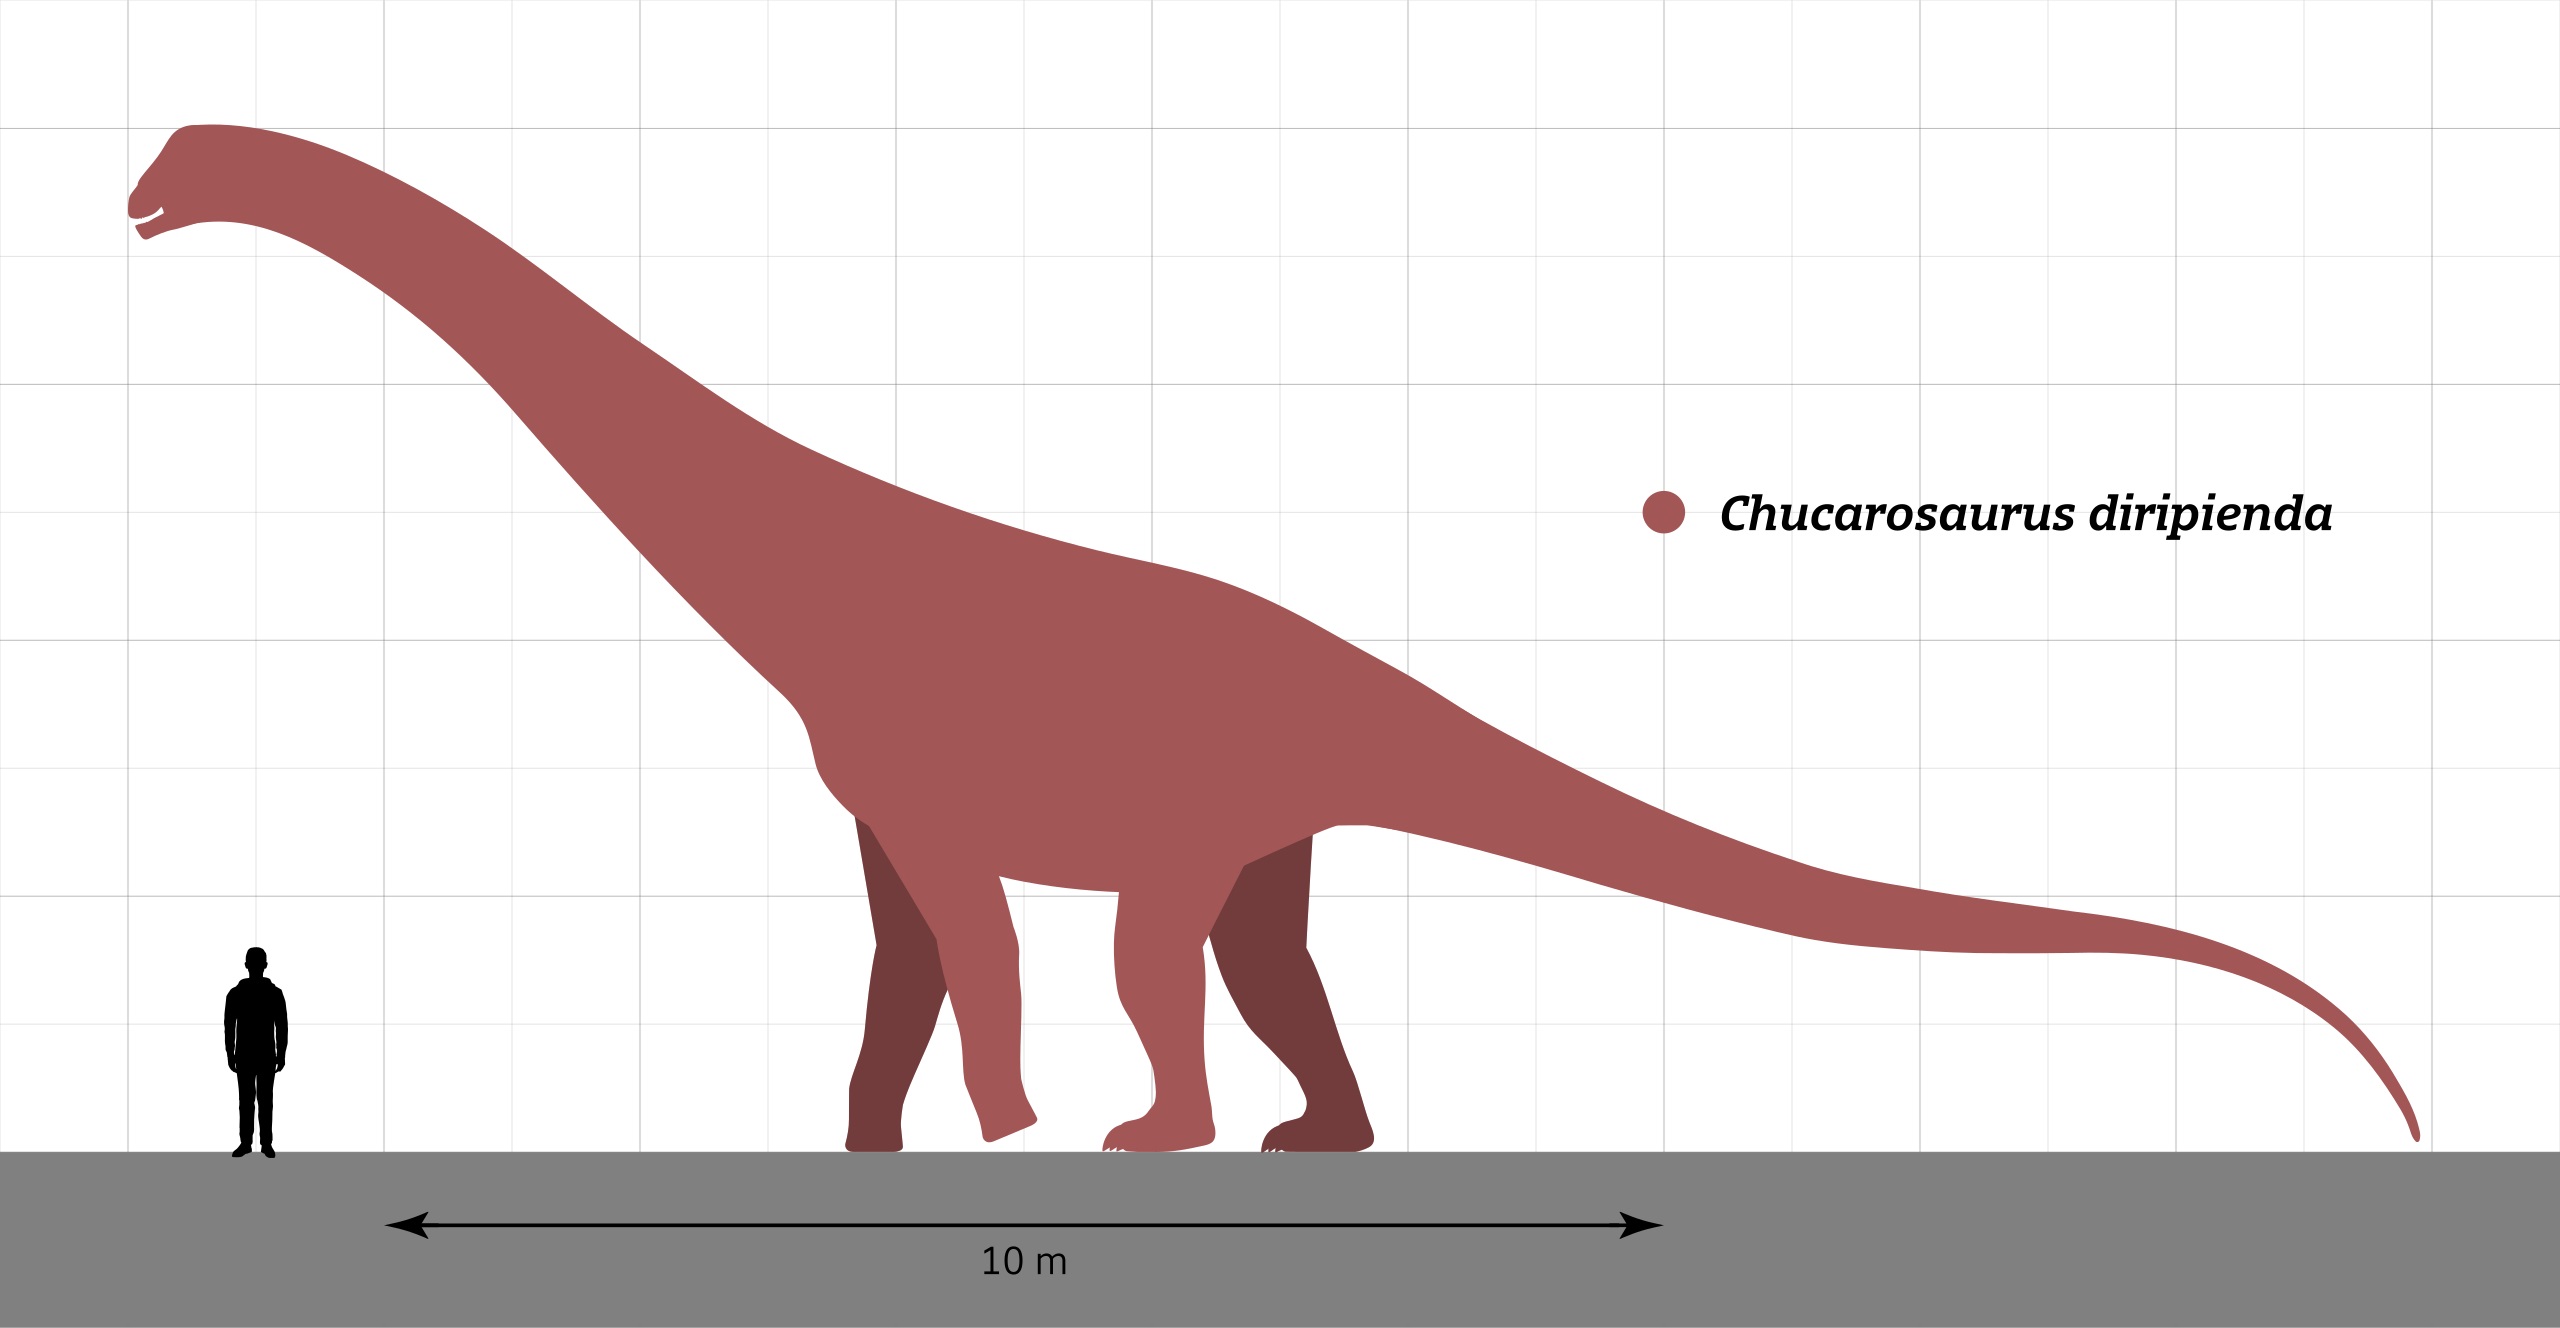 Rekonstrukce přibližného tvaru těla a velikosti nově popsaného titanosaurního sauropoda druhu Chucarosaurus diripienda. I s délkou přes 20 metrů a hmotností v řádu desítek tun byl výrazně menší než jeho současník Argentinosaurus, žijící ve stejných e